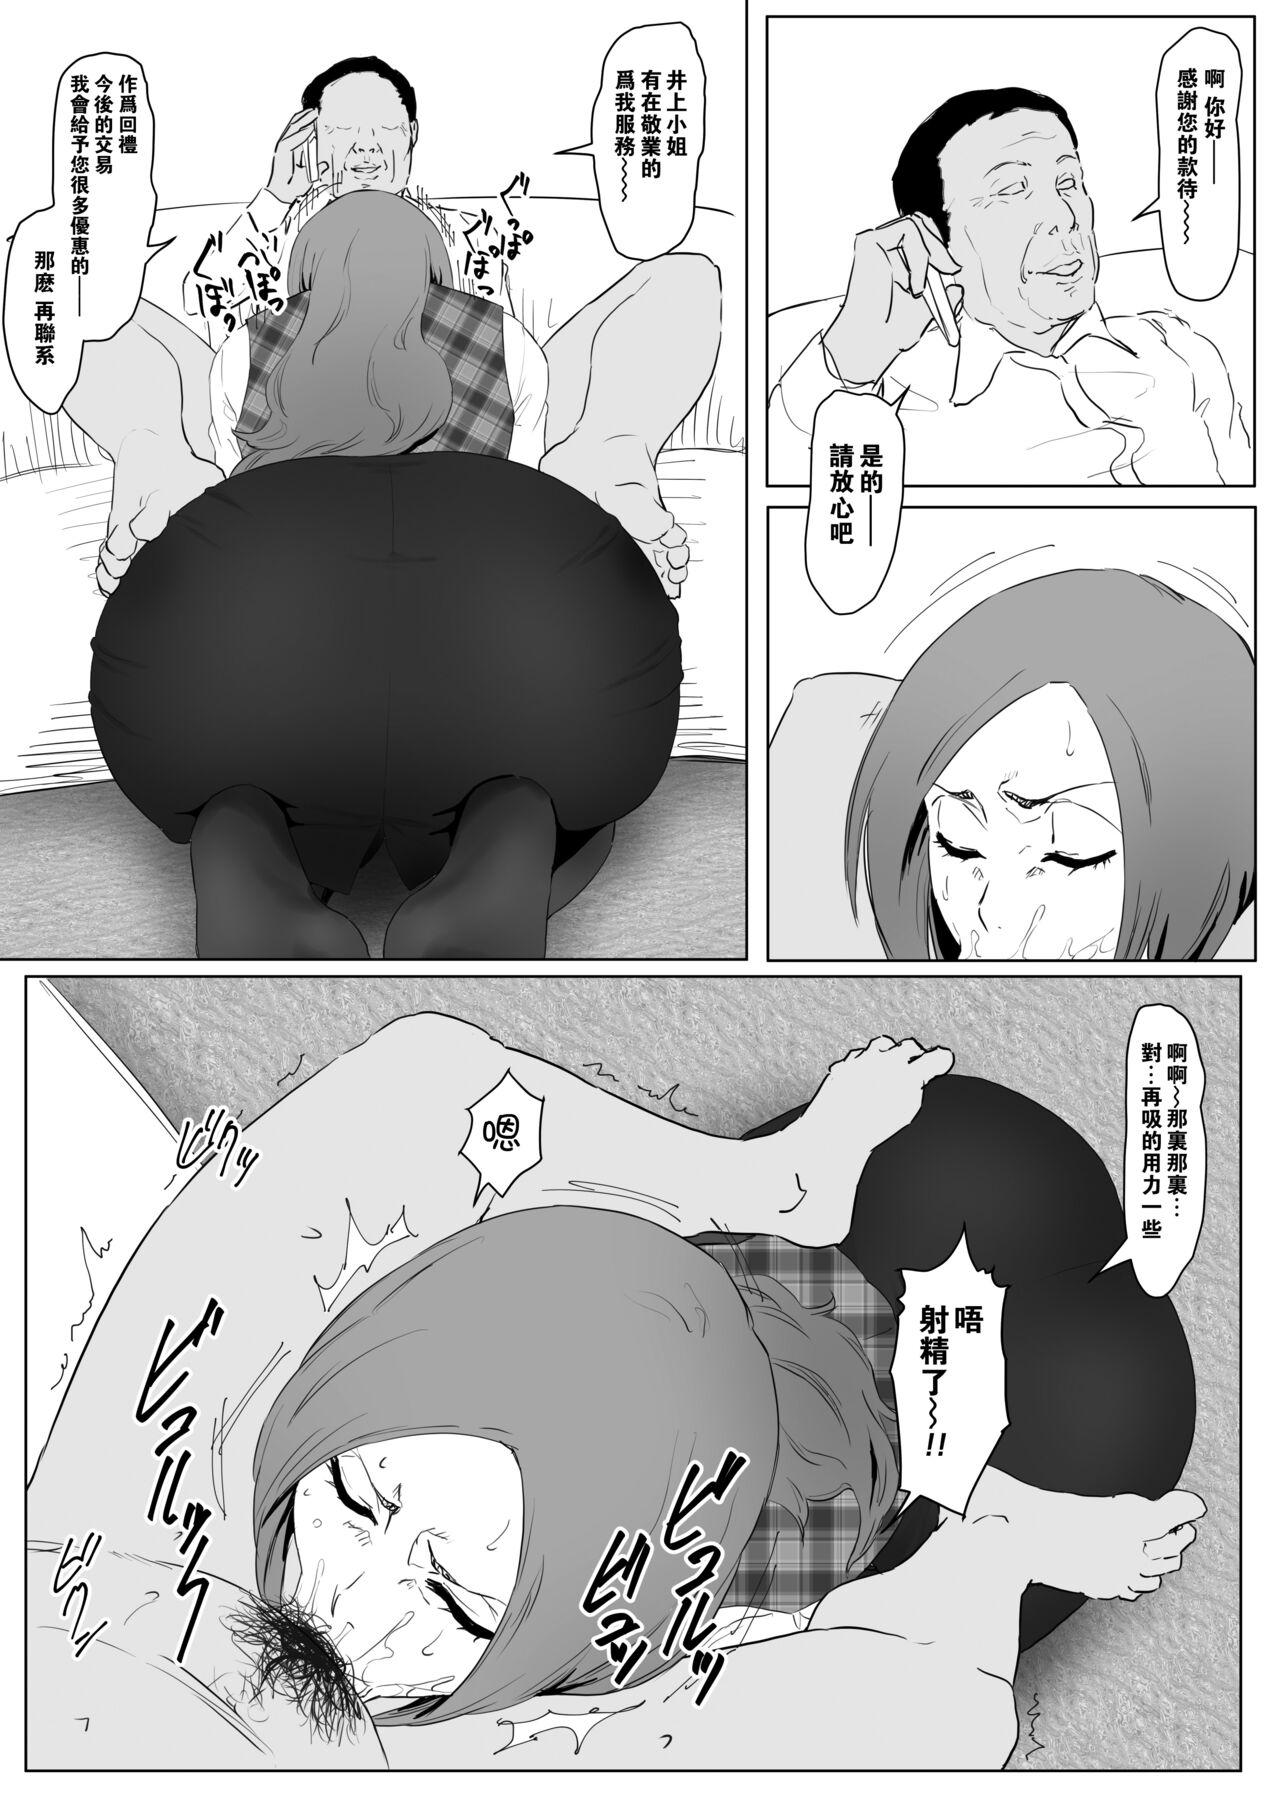 OL織姫+OL乱菊+杂图 2